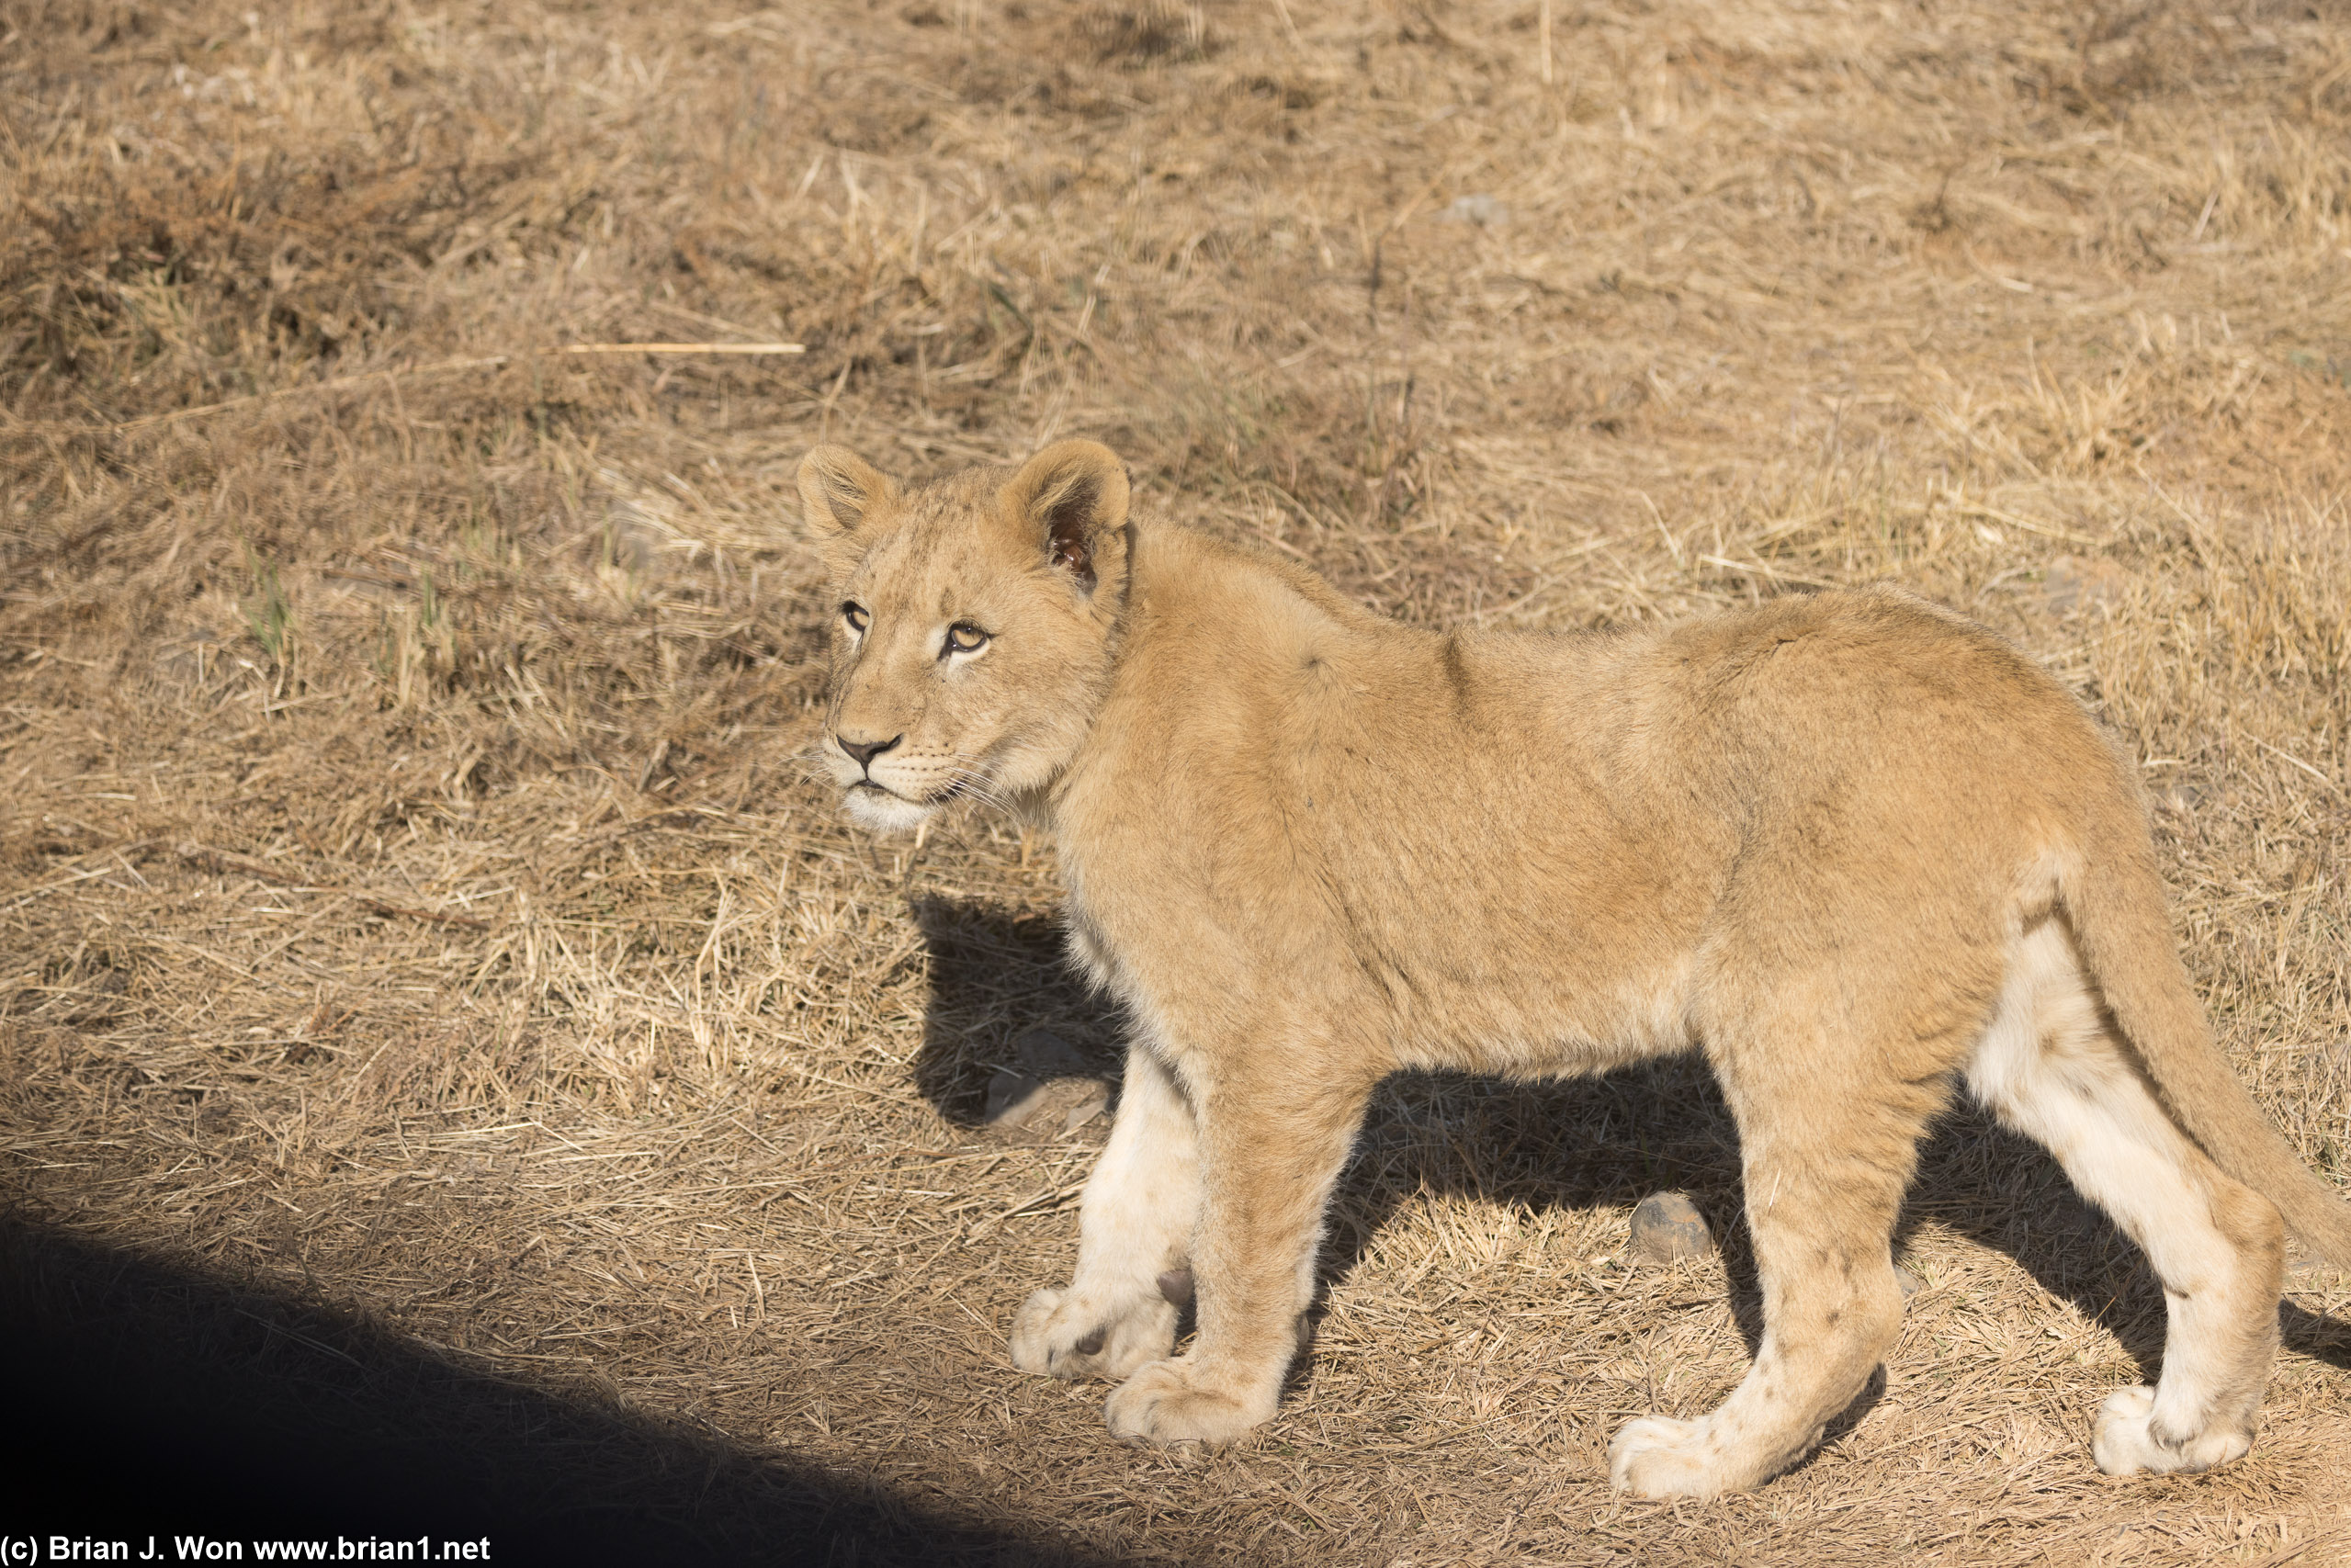 Slightly older lion cubs.